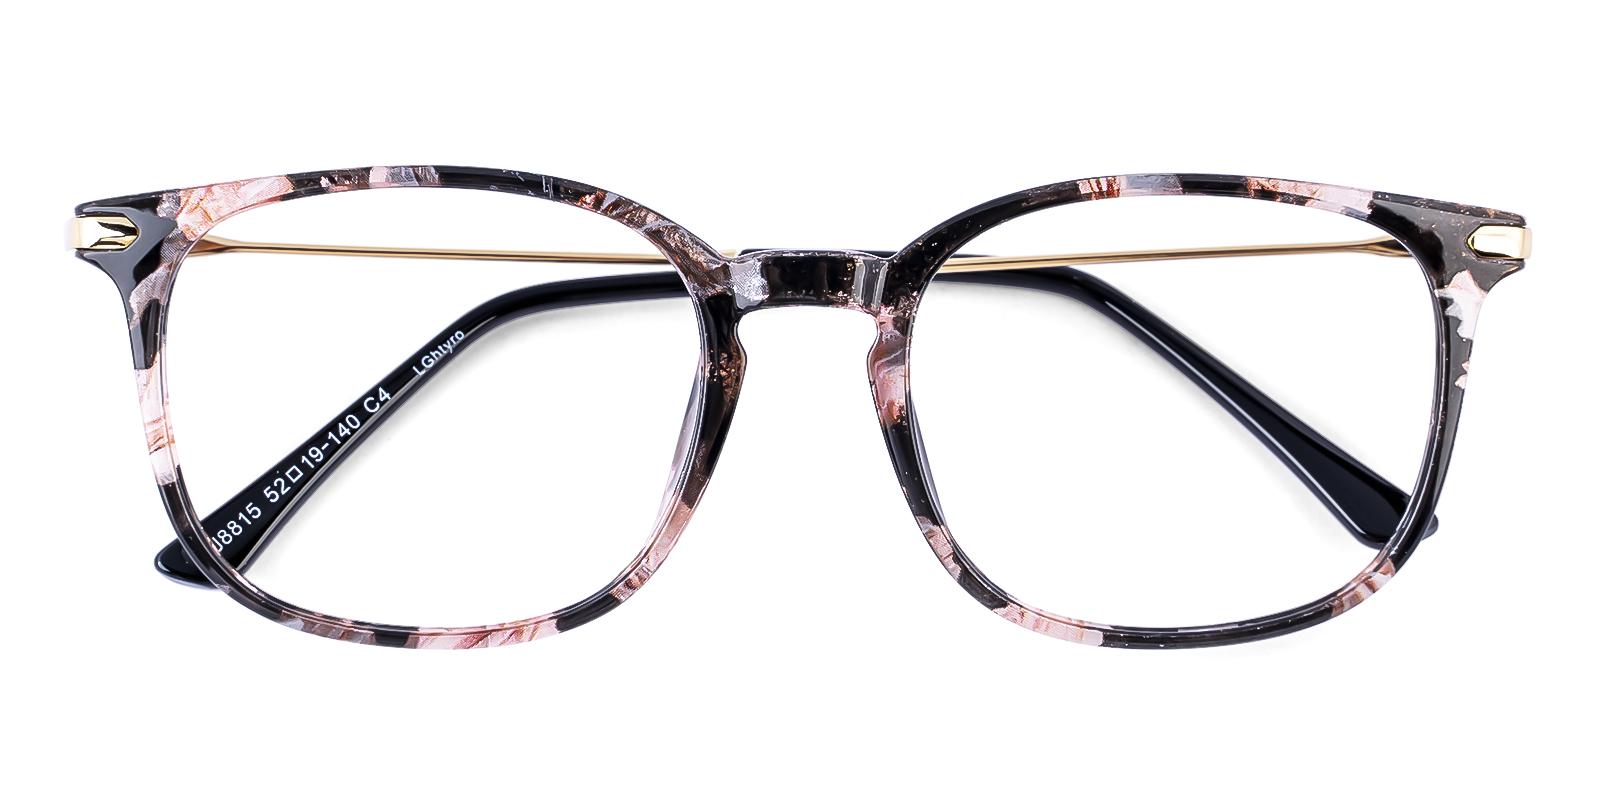 Dosast Pattern Plastic Eyeglasses , UniversalBridgeFit Frames from ABBE Glasses